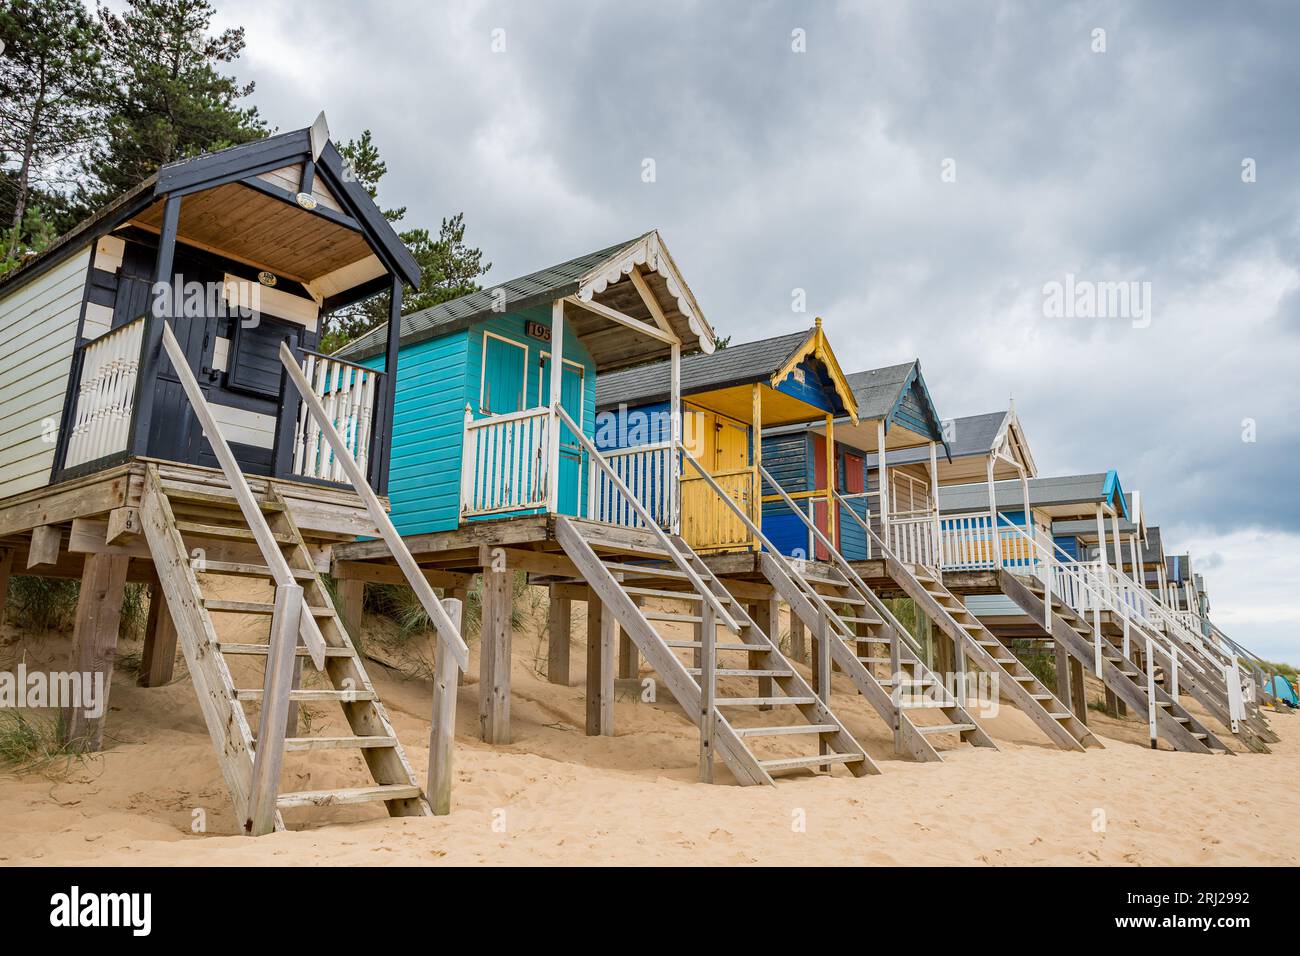 Cabanes de plage à Wells à côté de la mer sur la côte nord de Norfolk photographié au-dessus de la plage de sable doré sur pilotis en bois pour les protéger des marées hautes. Banque D'Images